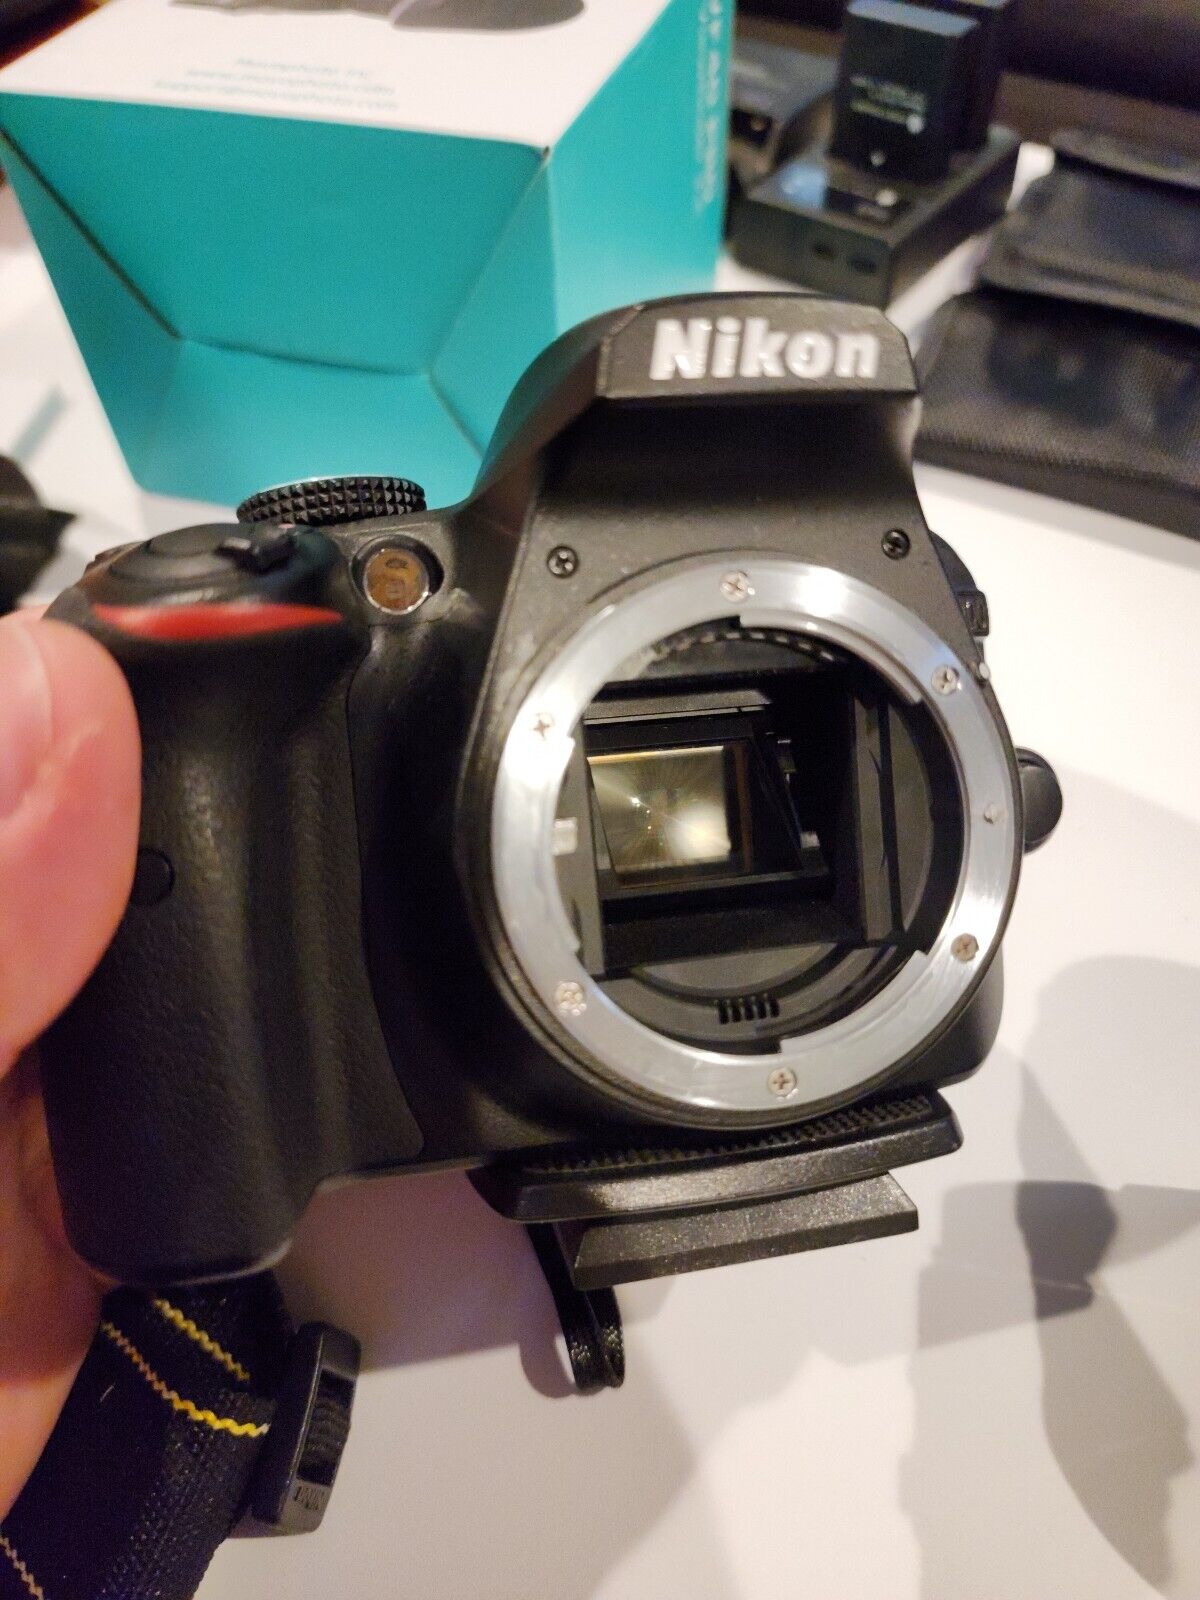 Nikon D3400 24,2MP DSLR Camera - Black (Kit with 18-55mm f/3.5-5.6G VR Lens)